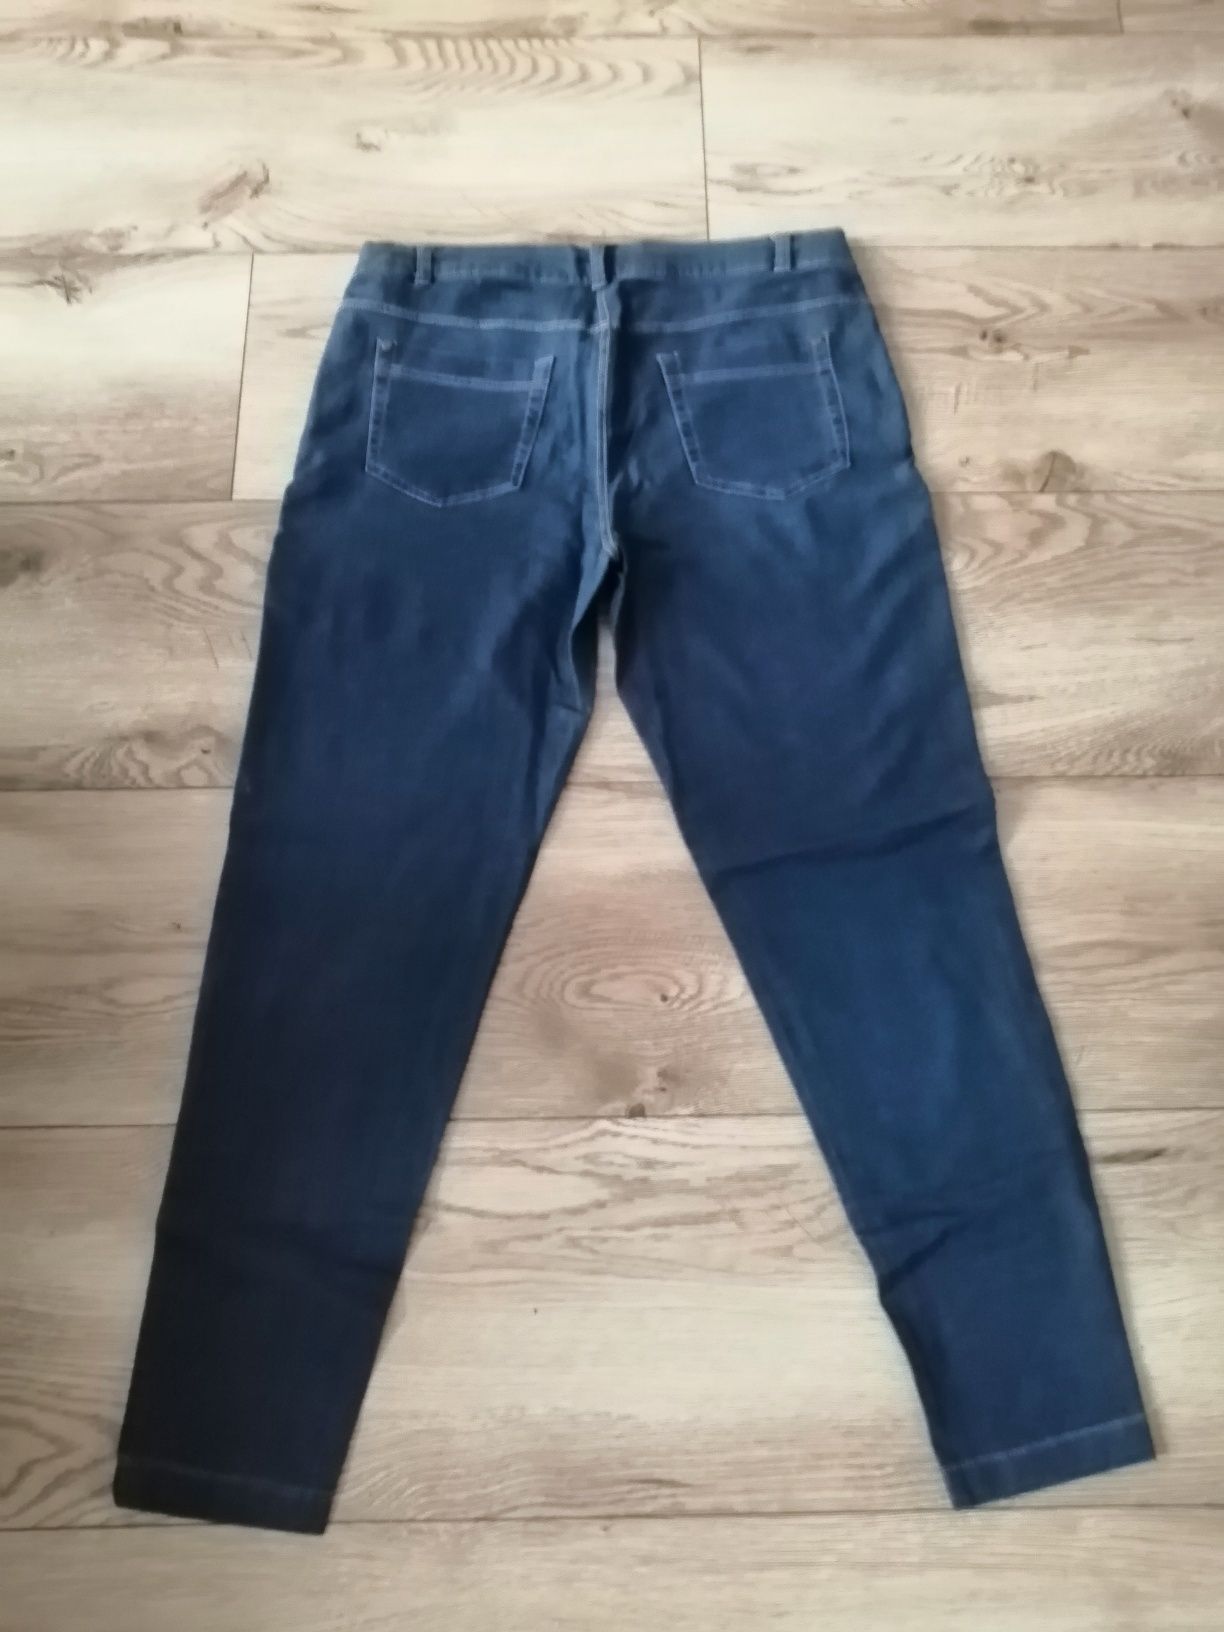 Spodnie damskie bawełniane Tchibo stylizowane na jeans.